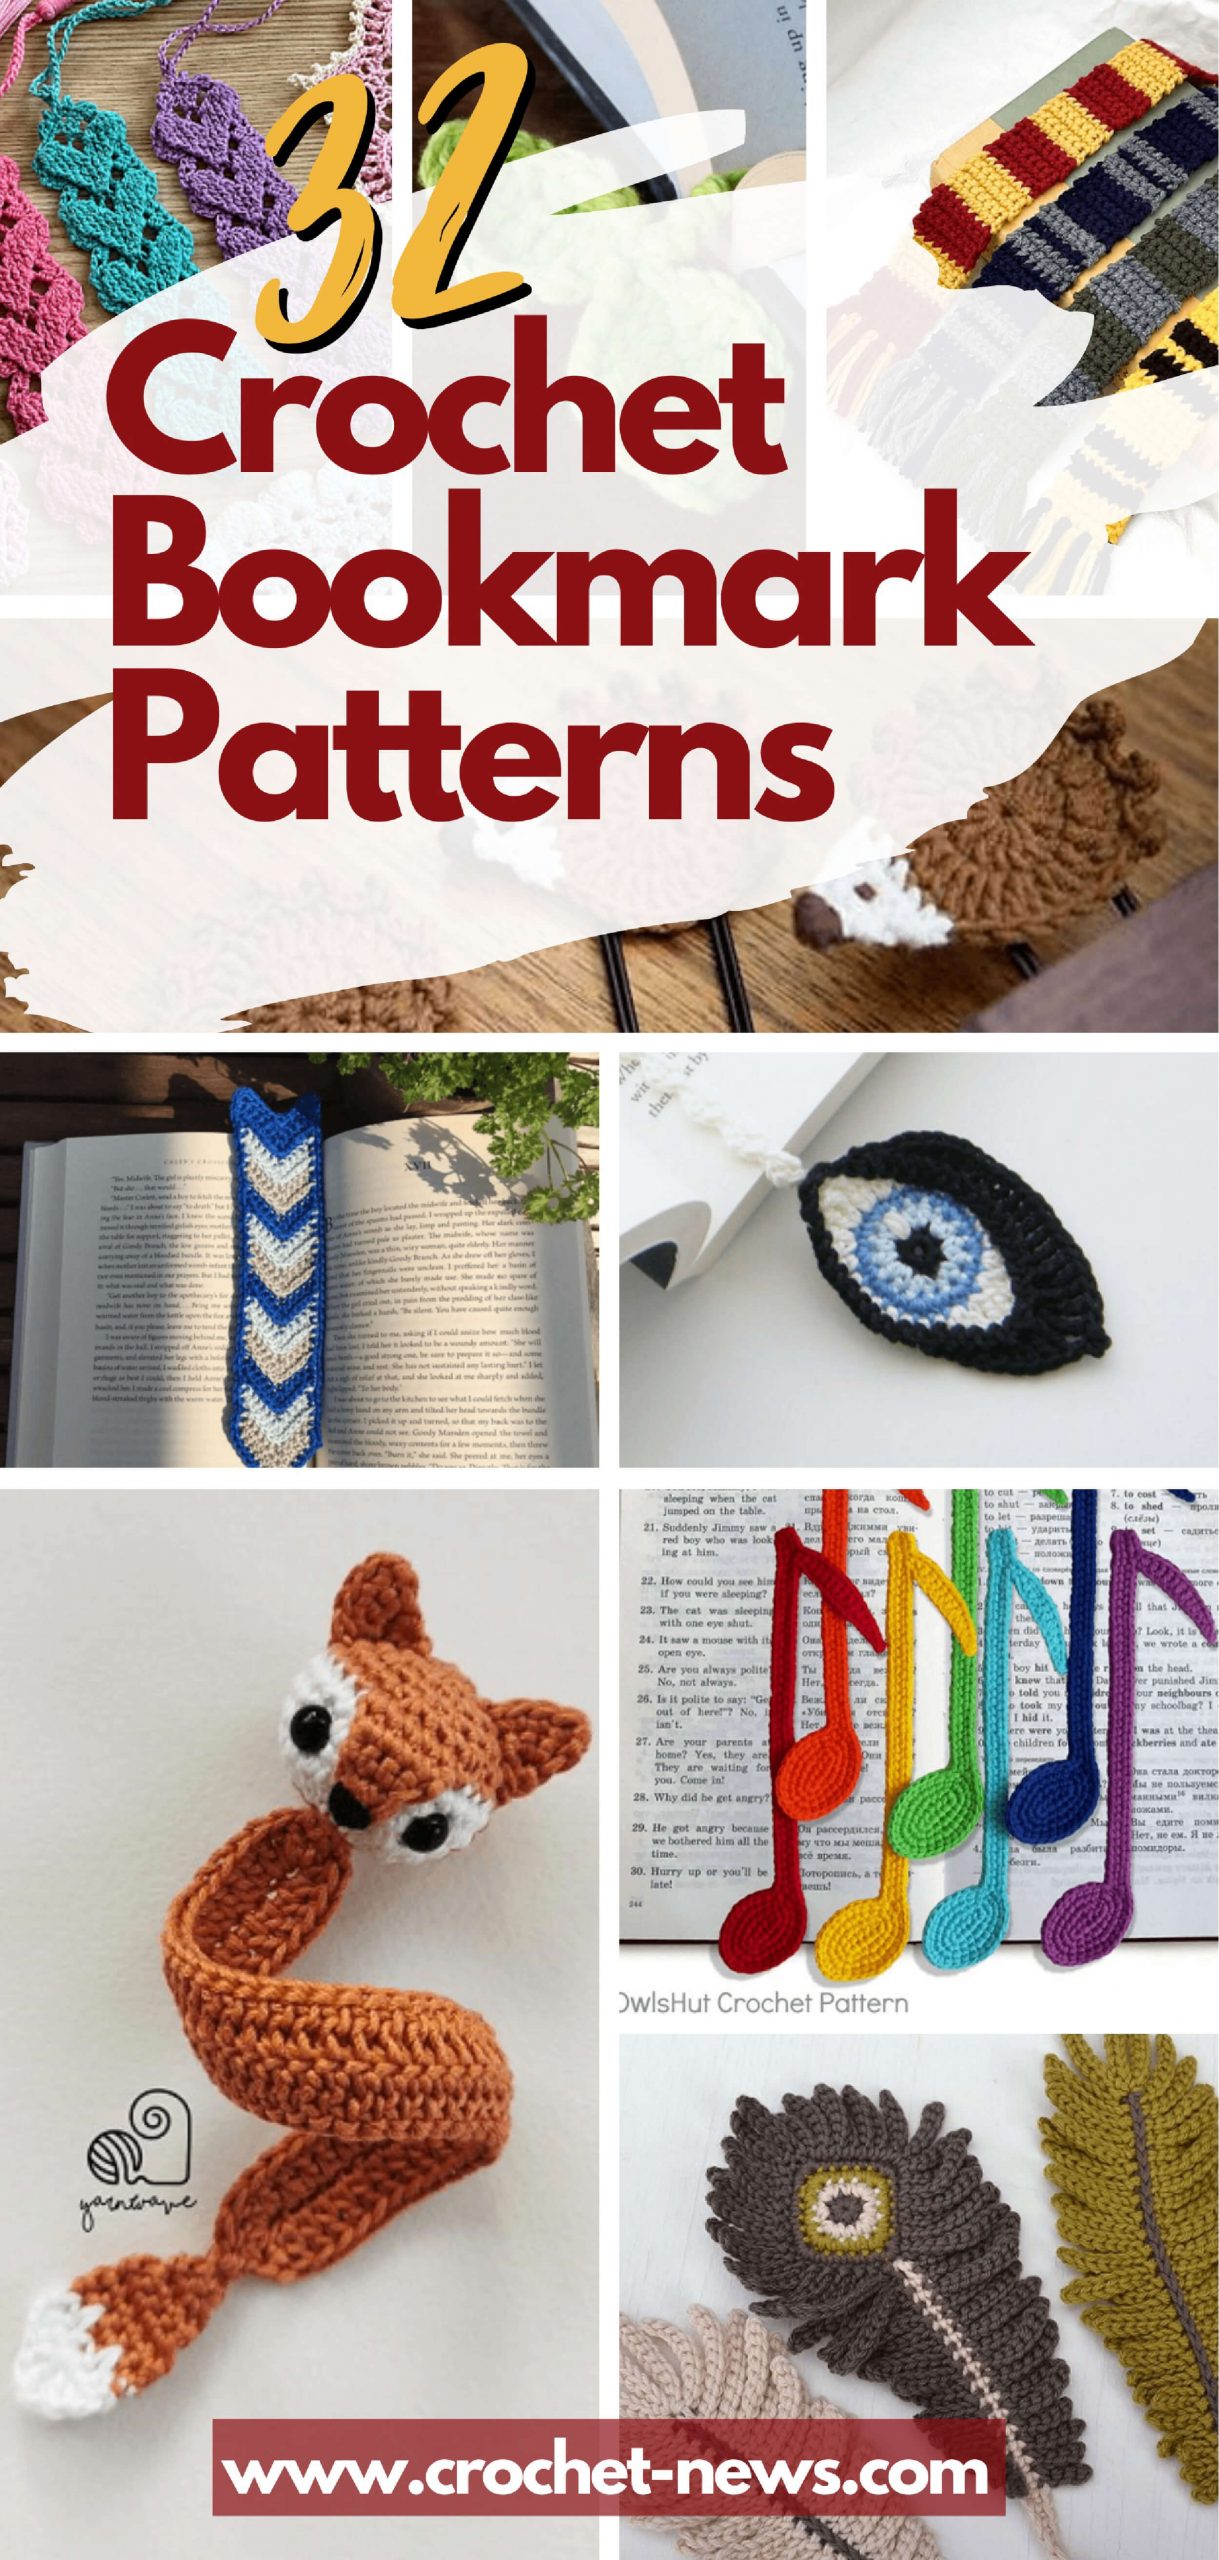 32 Crochet Bookmark Patterns - Crochet News